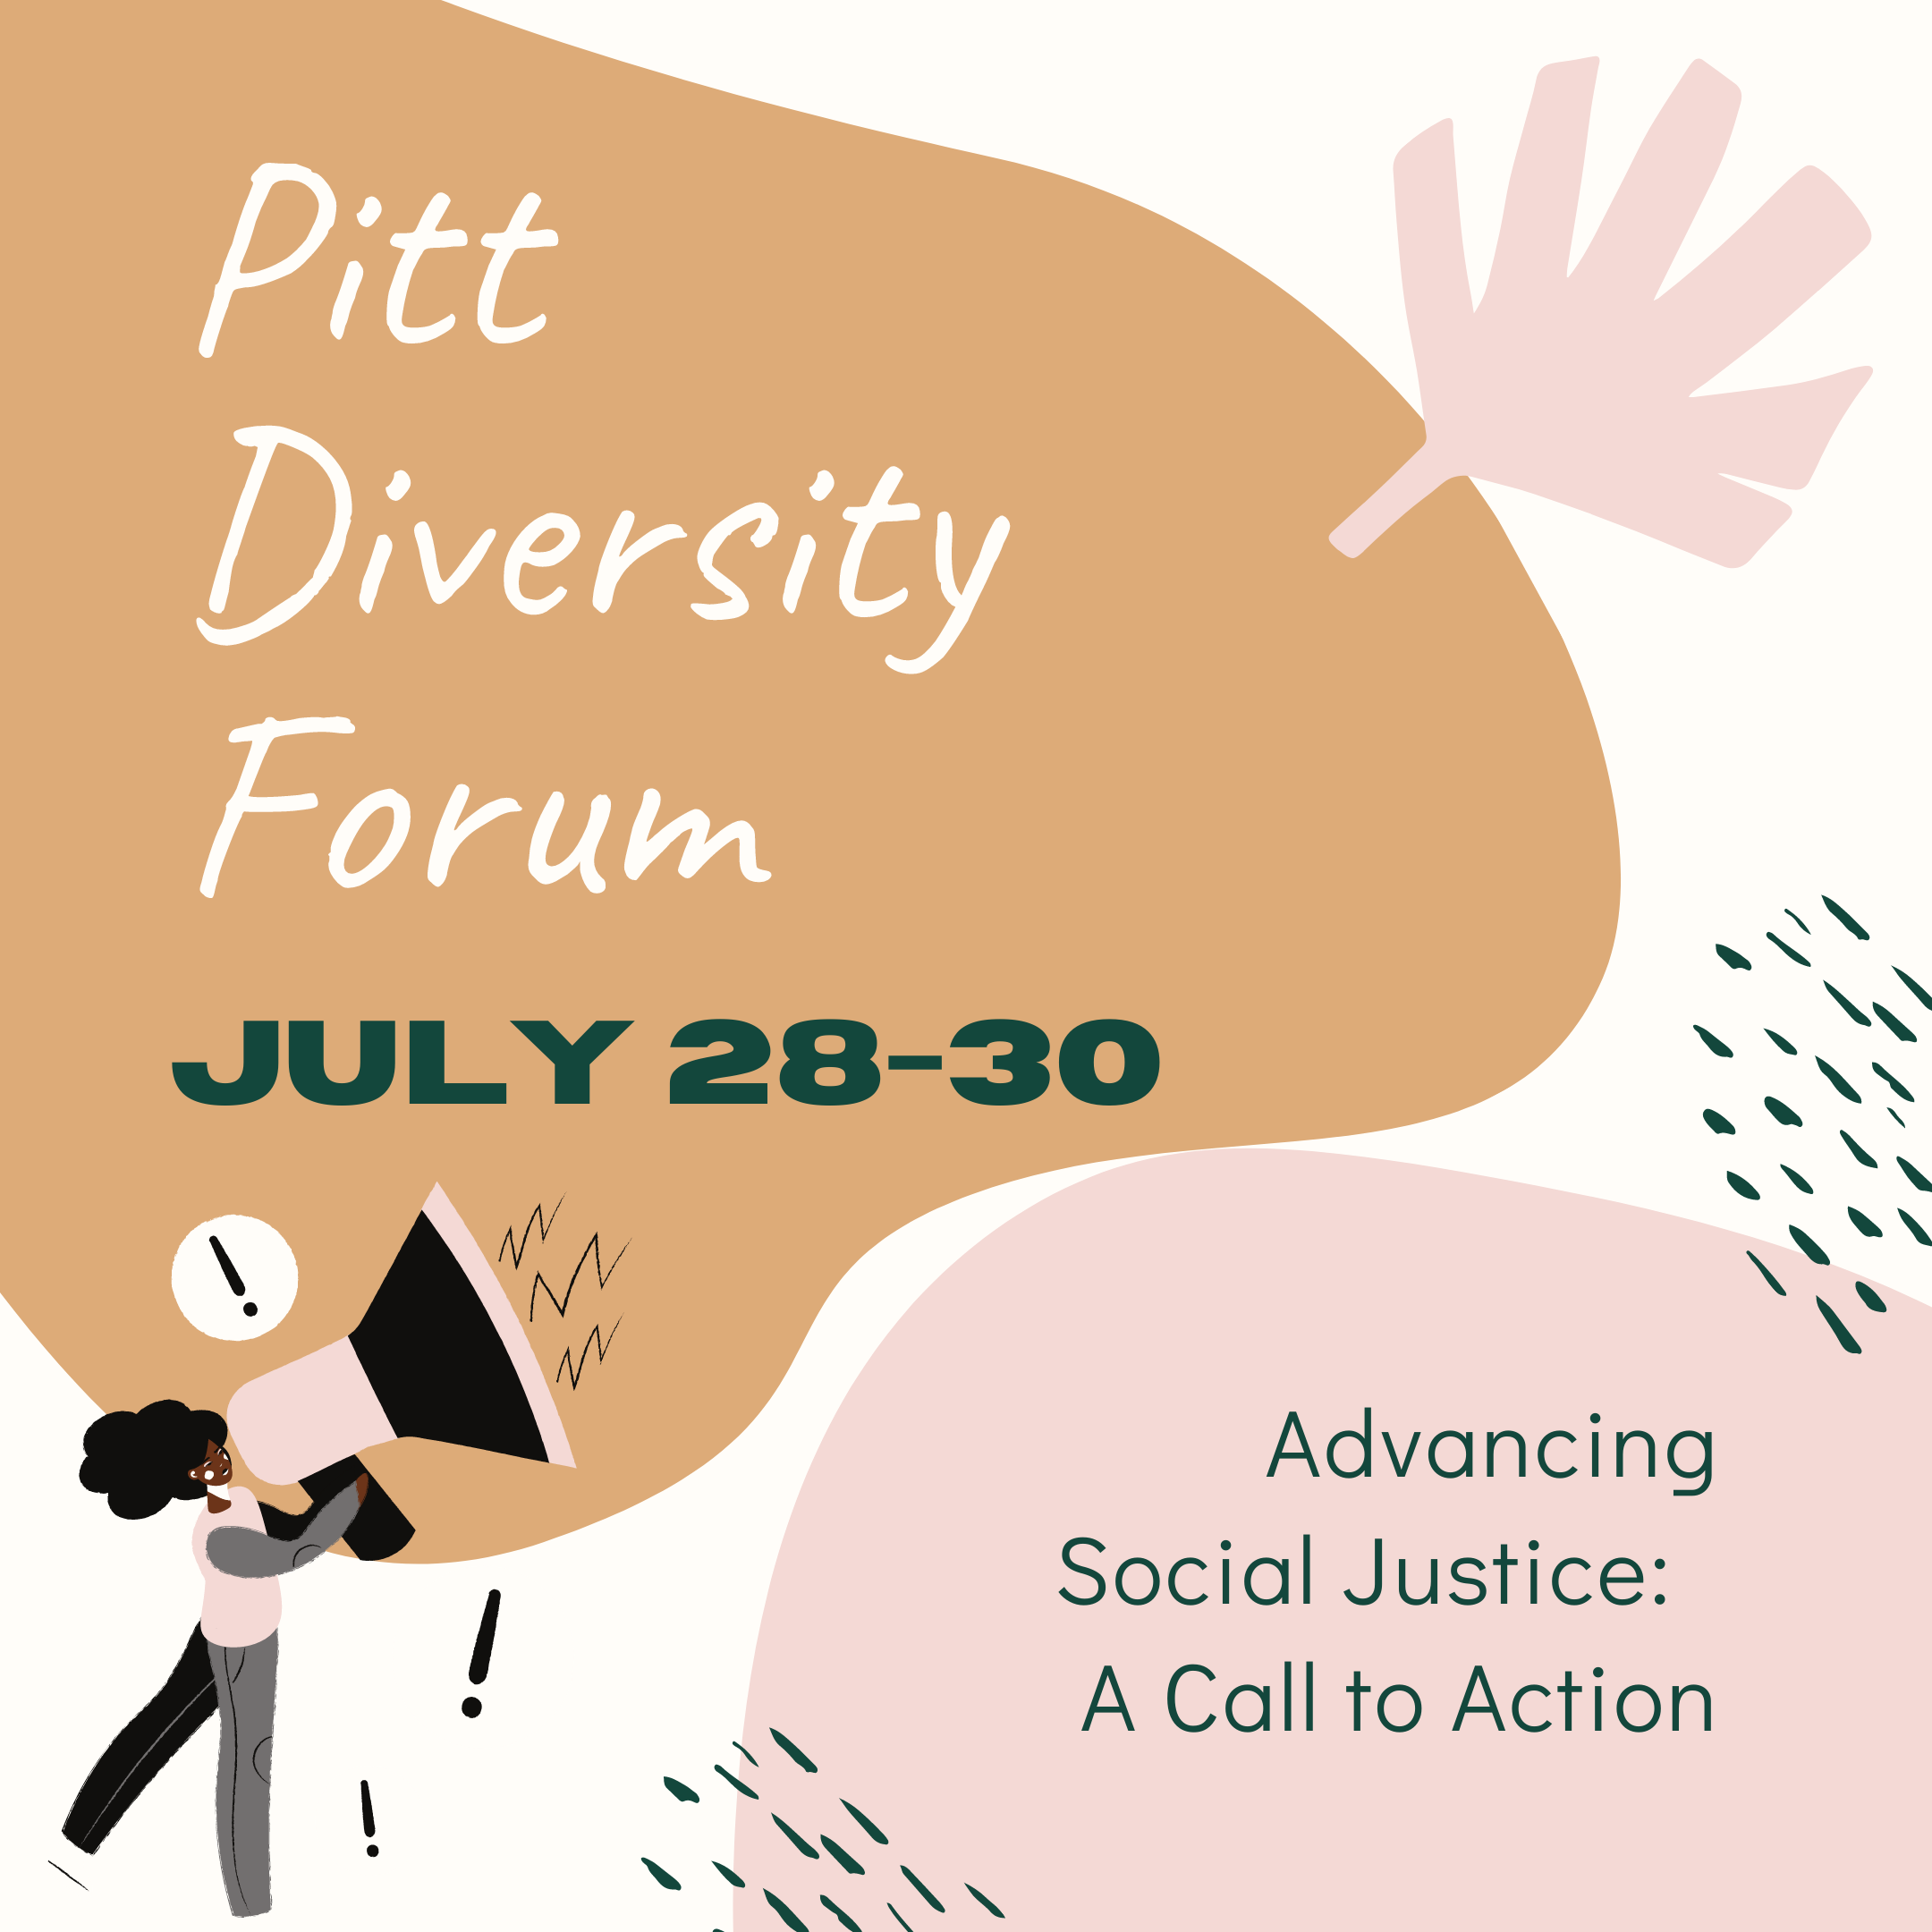 PITT Diversity Forum.png